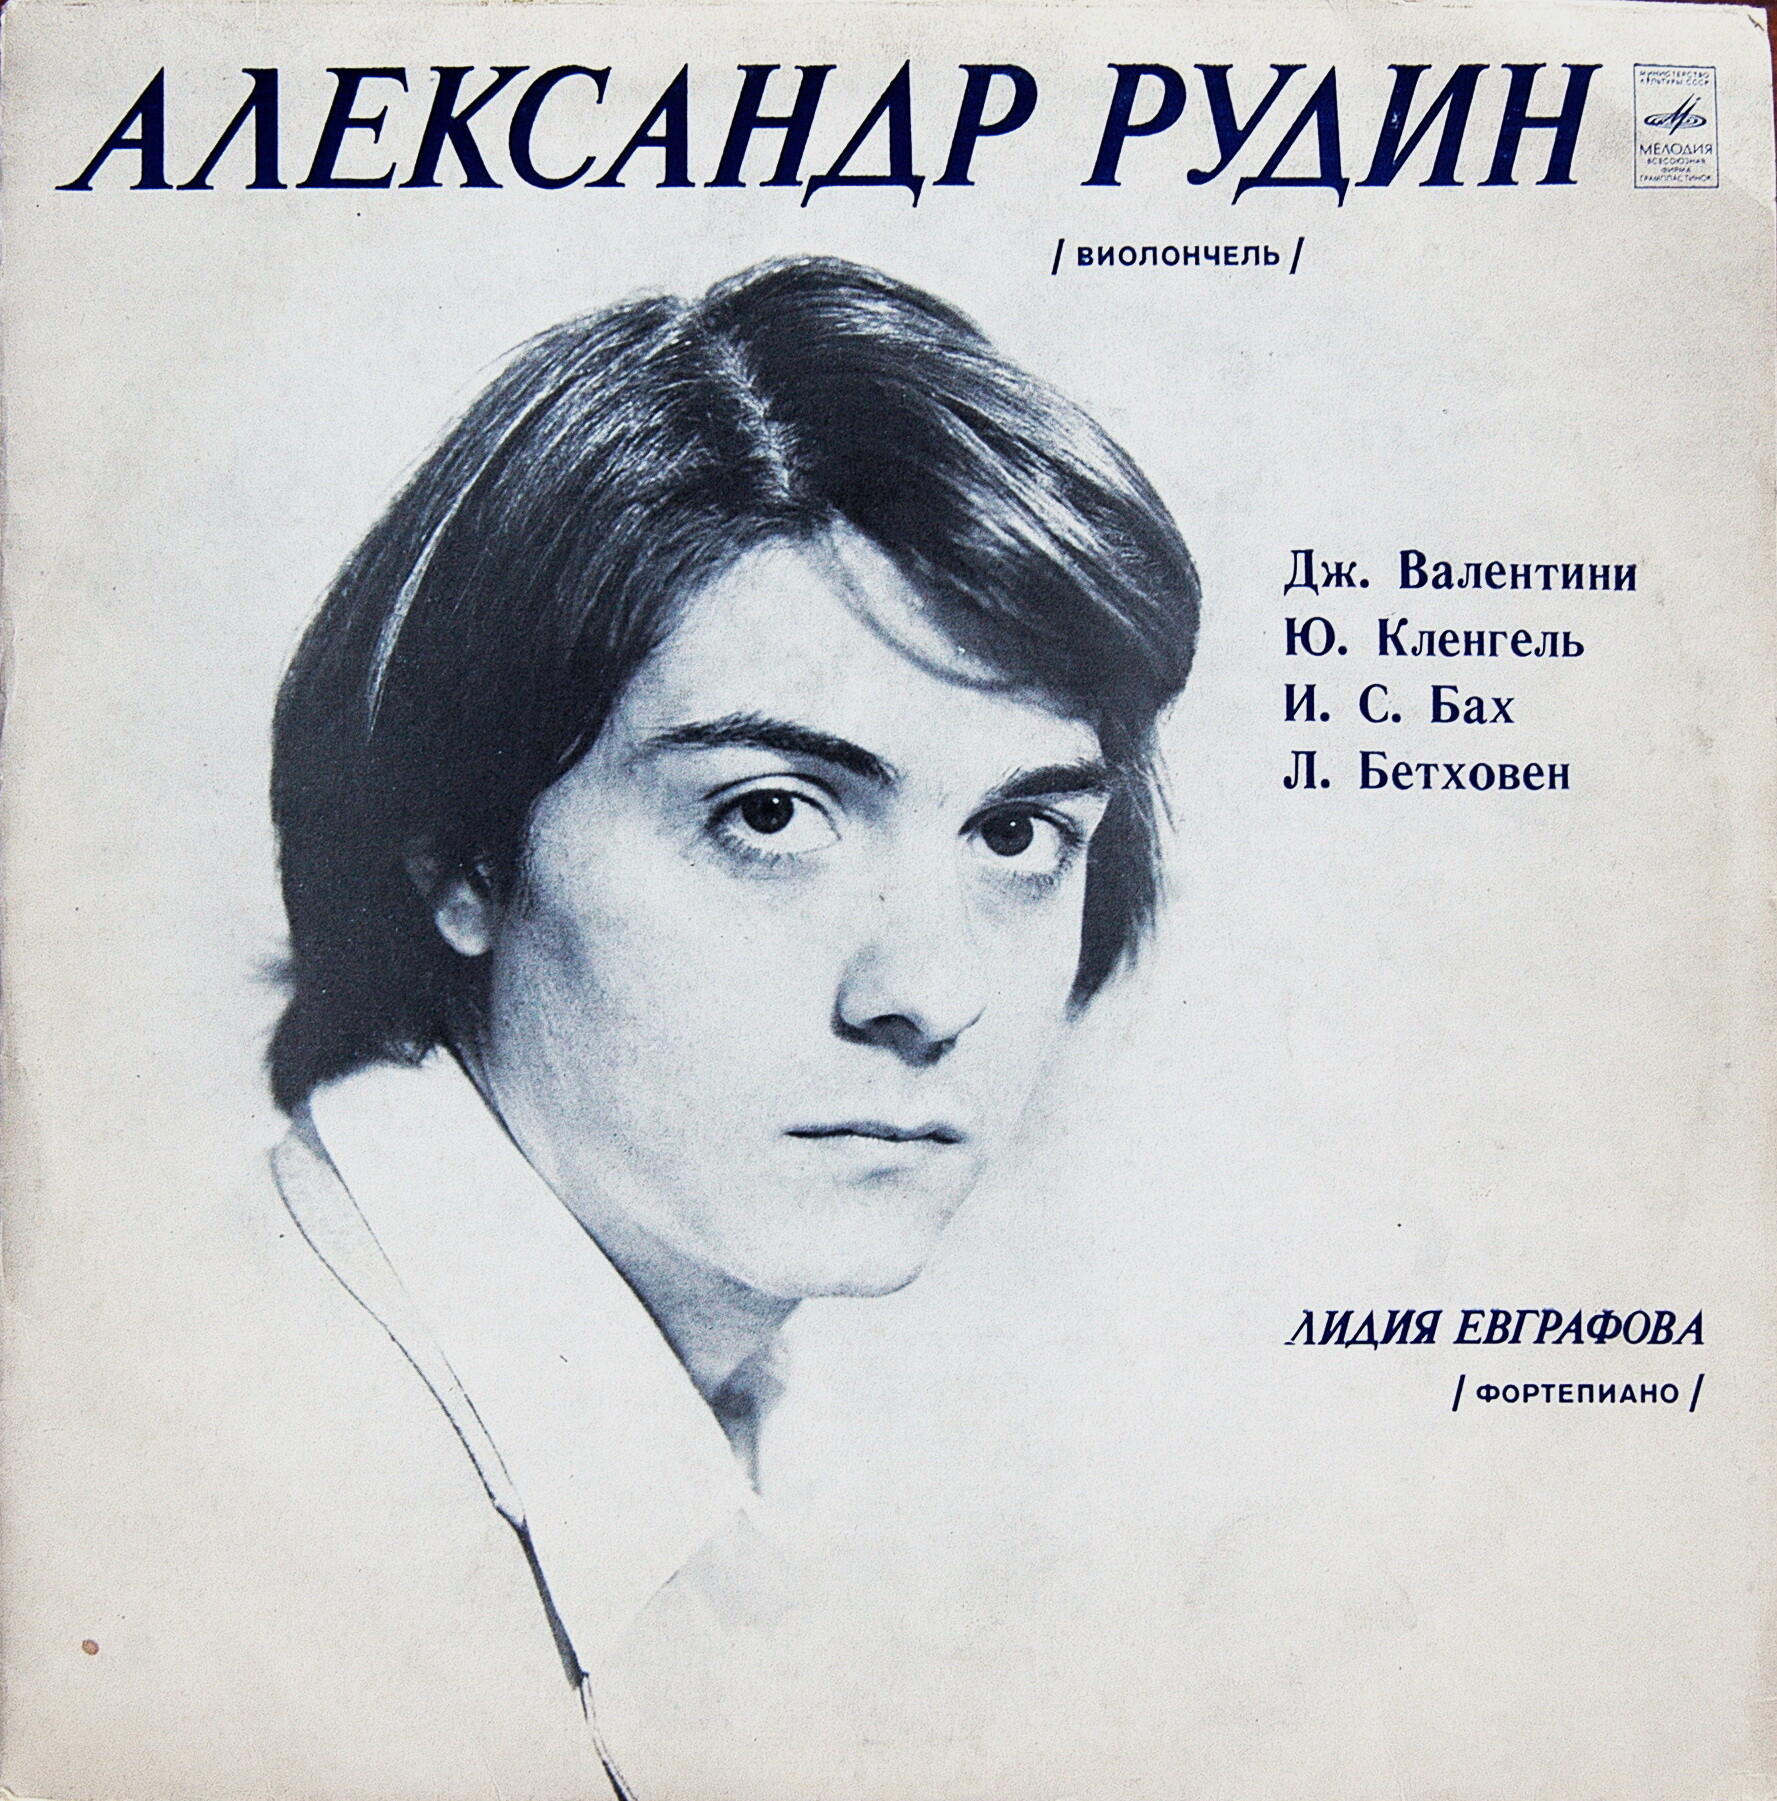 Александр РУДИН - виолончель. Лидия ЕВГРАФОВА - фортепиано